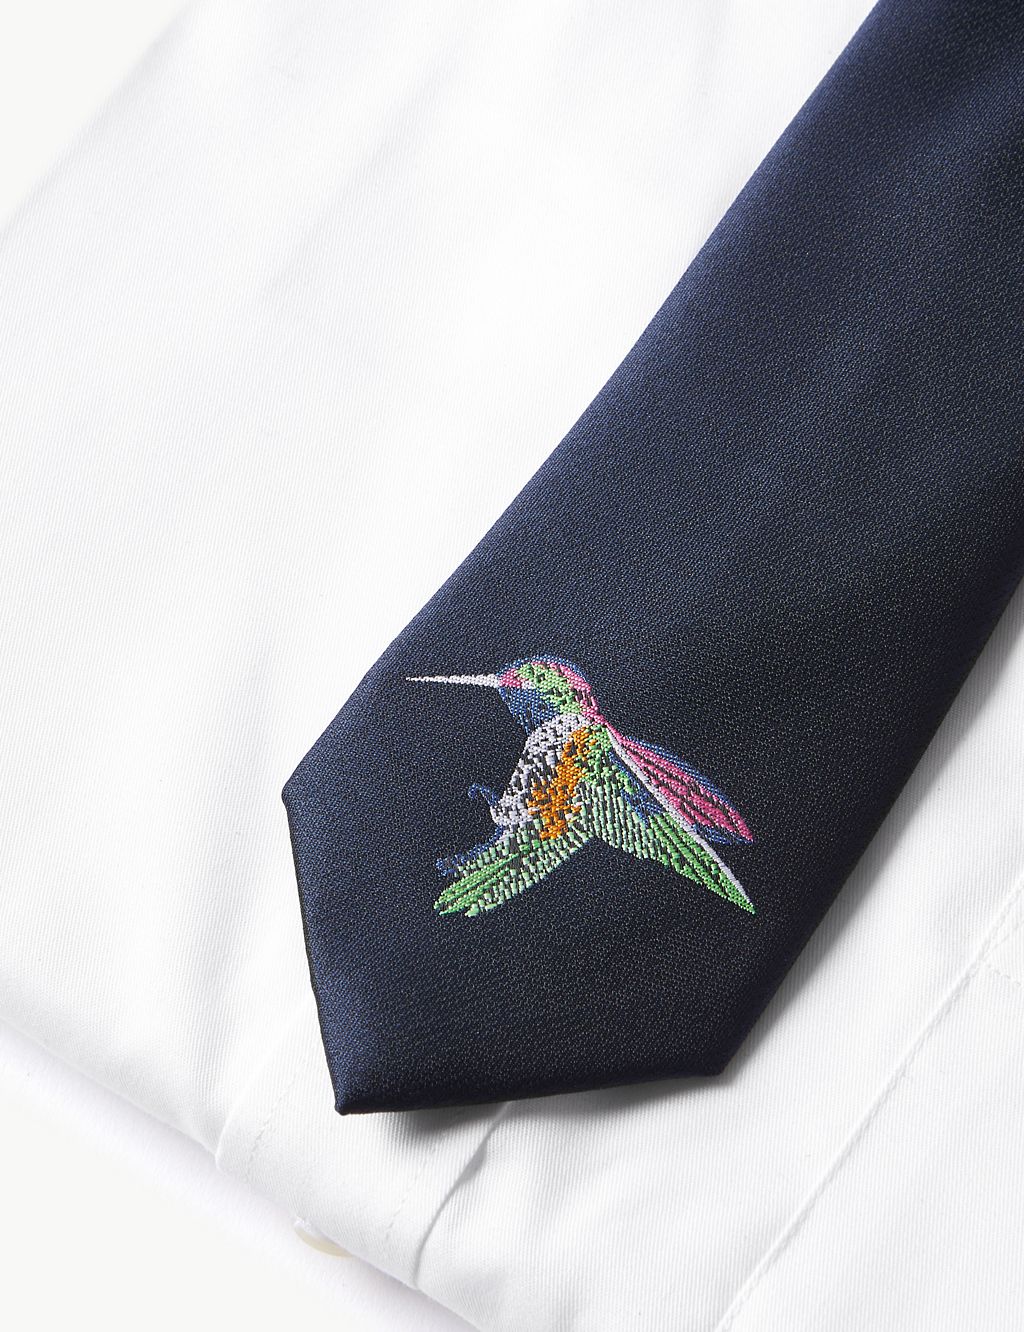 Hummingbird Tie 1 of 6